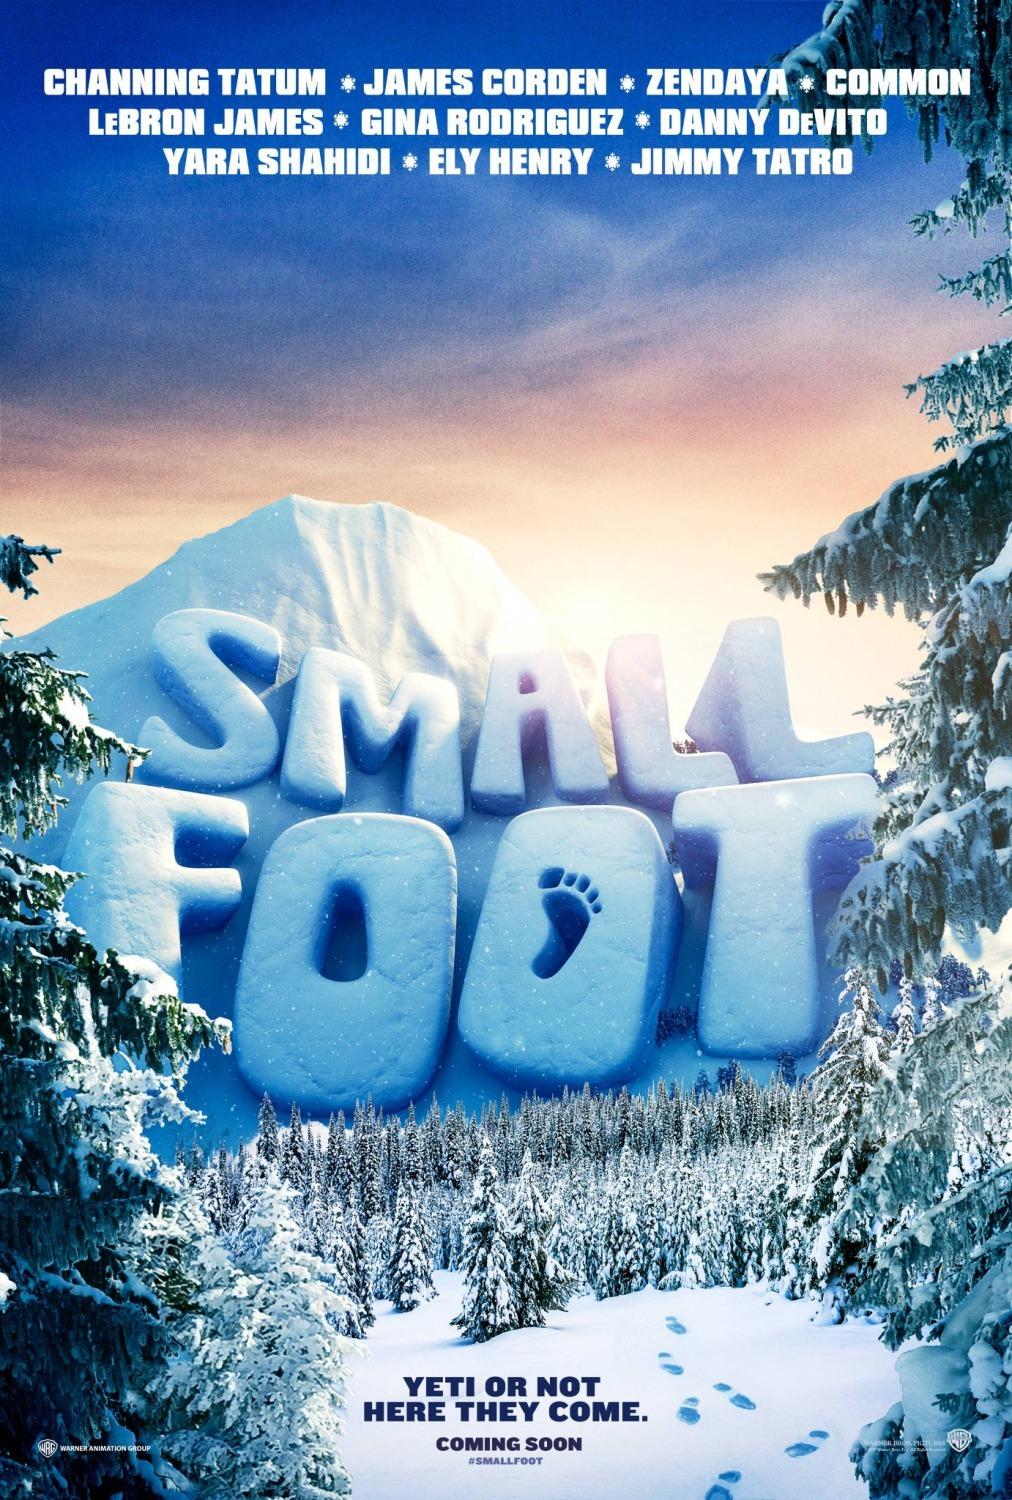 فيلم Smallfoot - أفضل أفلام 2018